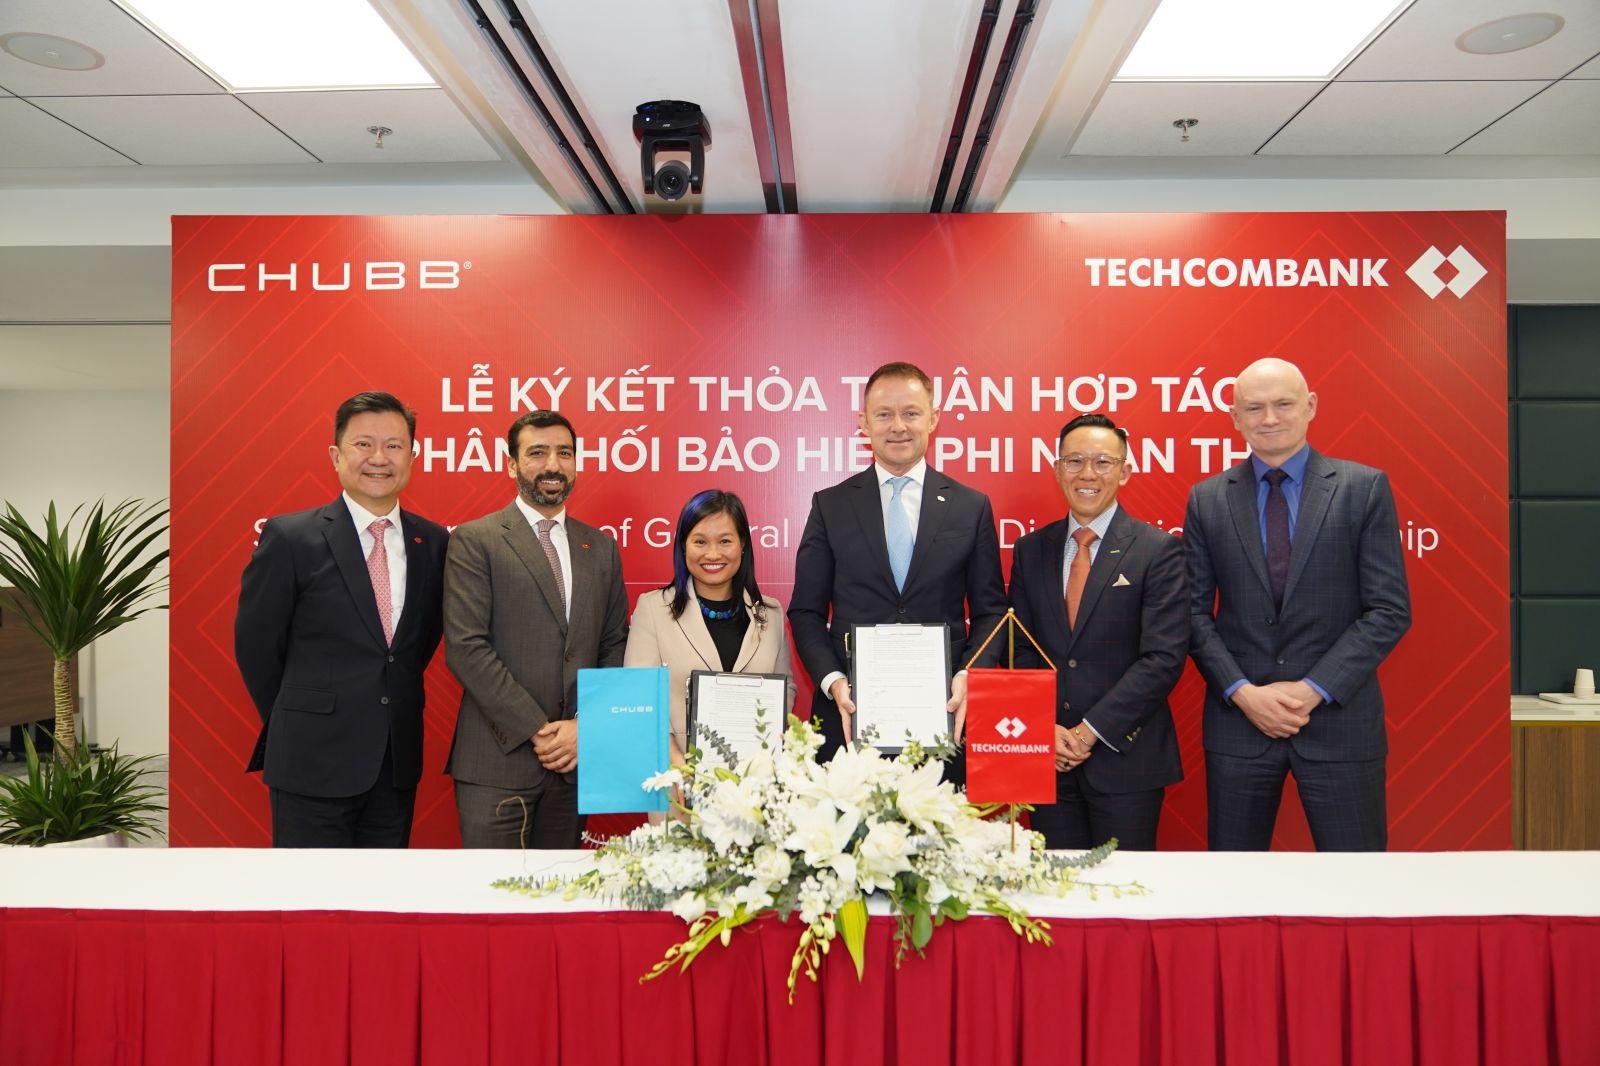 Chubb) và Ngân hàng Thương mại Cổ phần Kỹ thương Việt Nam (Techcombank) - Ngân hàng bán lẻ hàng đầu Việt Nam vừa công bố mối quan hệ hợp tác mới kéo dài 5 năm để cùng tạo ra các giải pháp bảo hiểm mang tính đột phá hướng tới khách hàng.